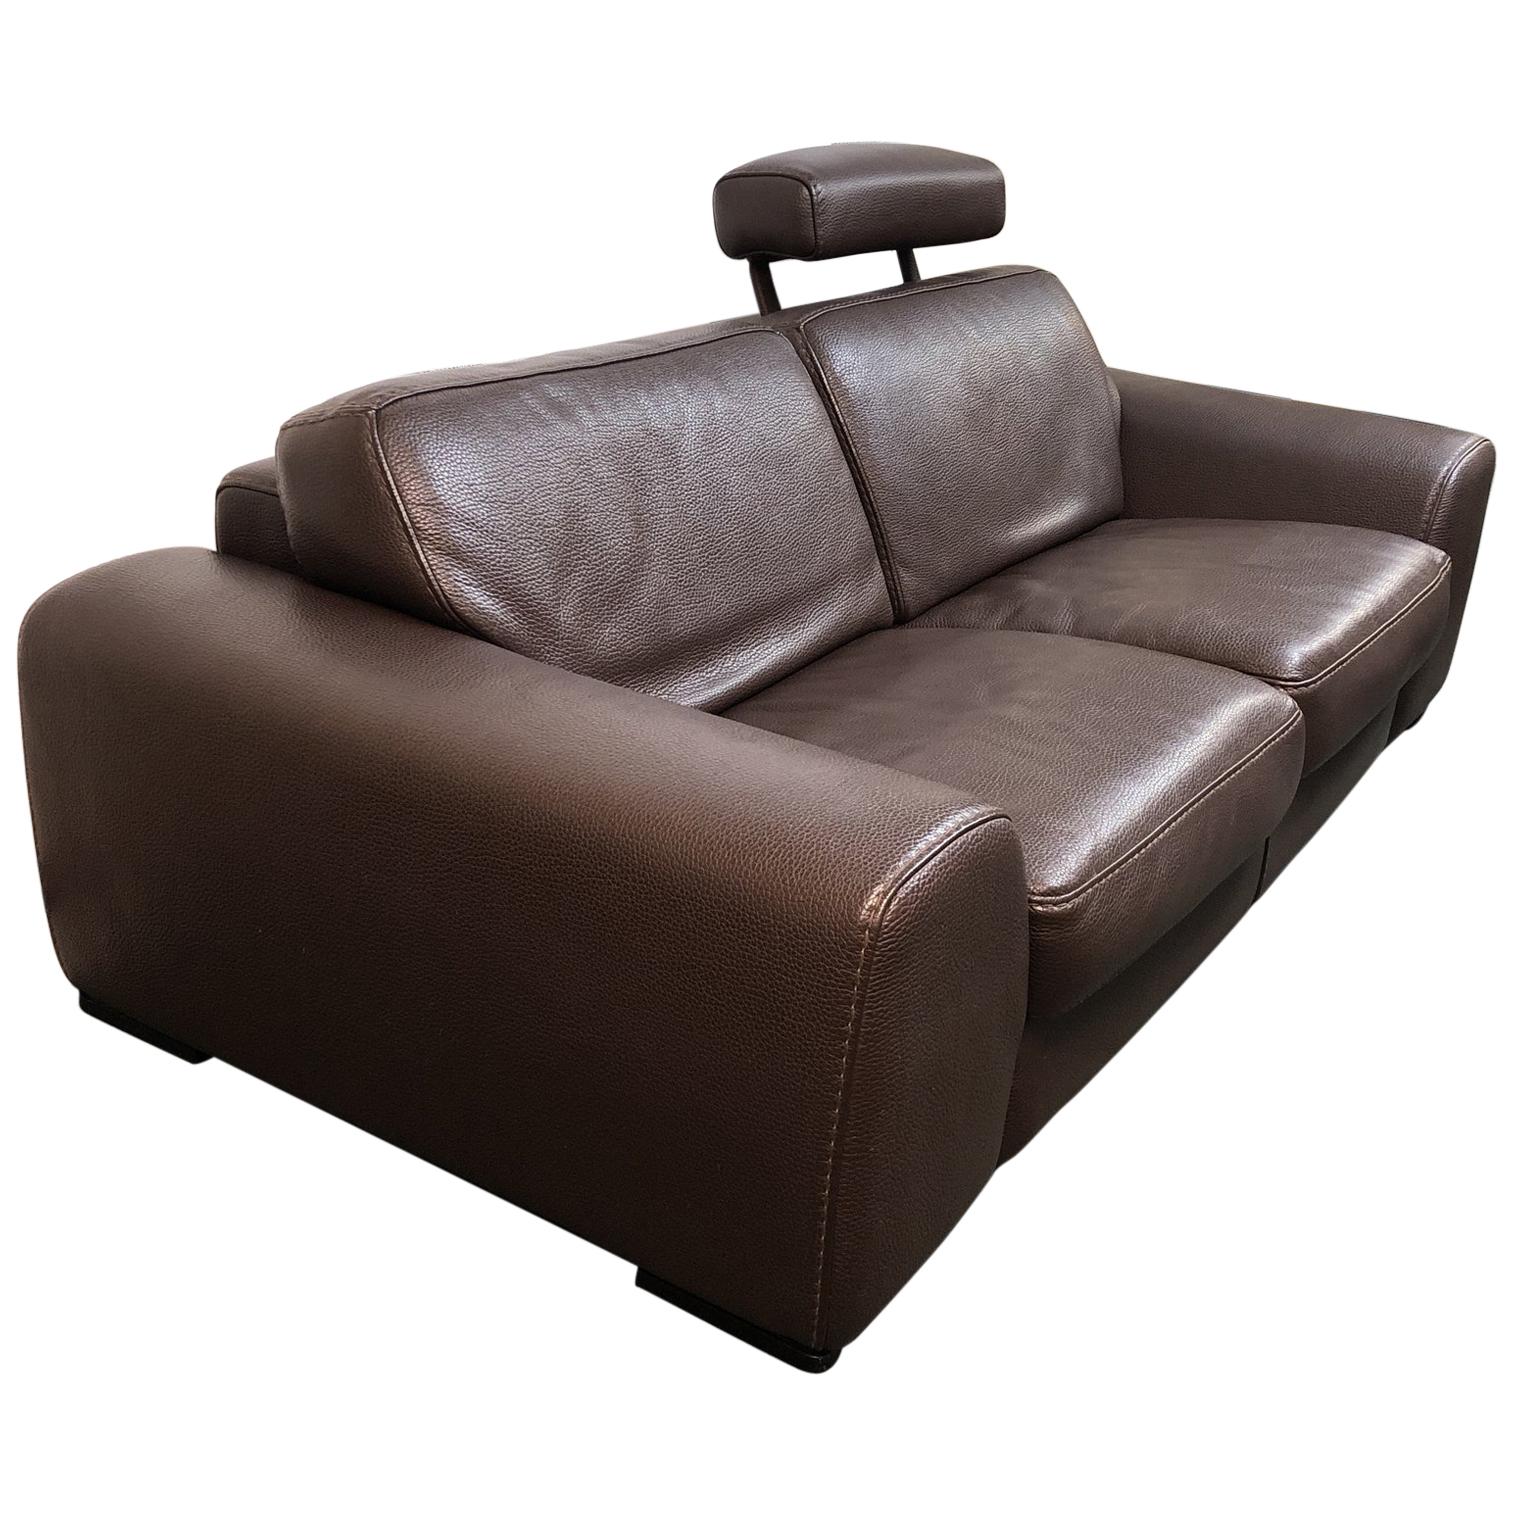 Roche Bobois Leather Sofa For Sale